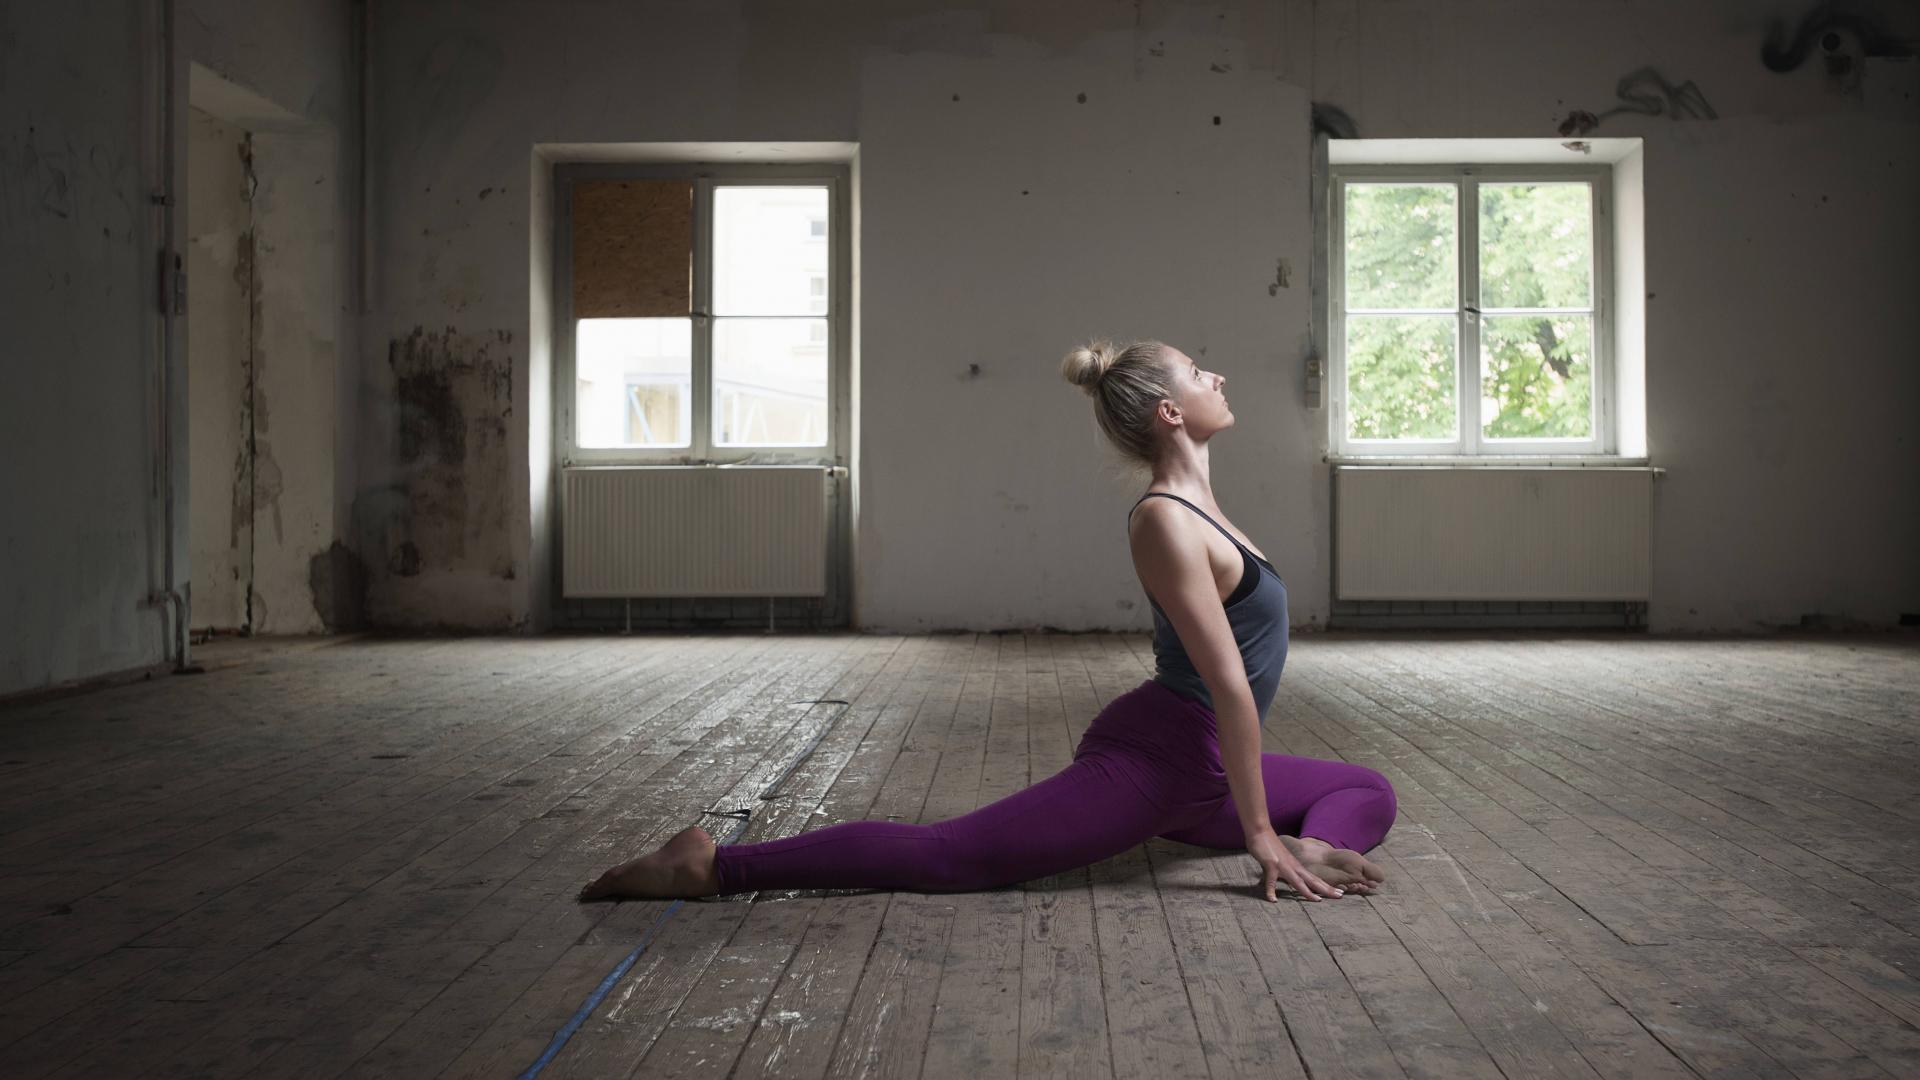 Frau in Yoga-Taubenstellung in einer alten verlassenen Wohnung